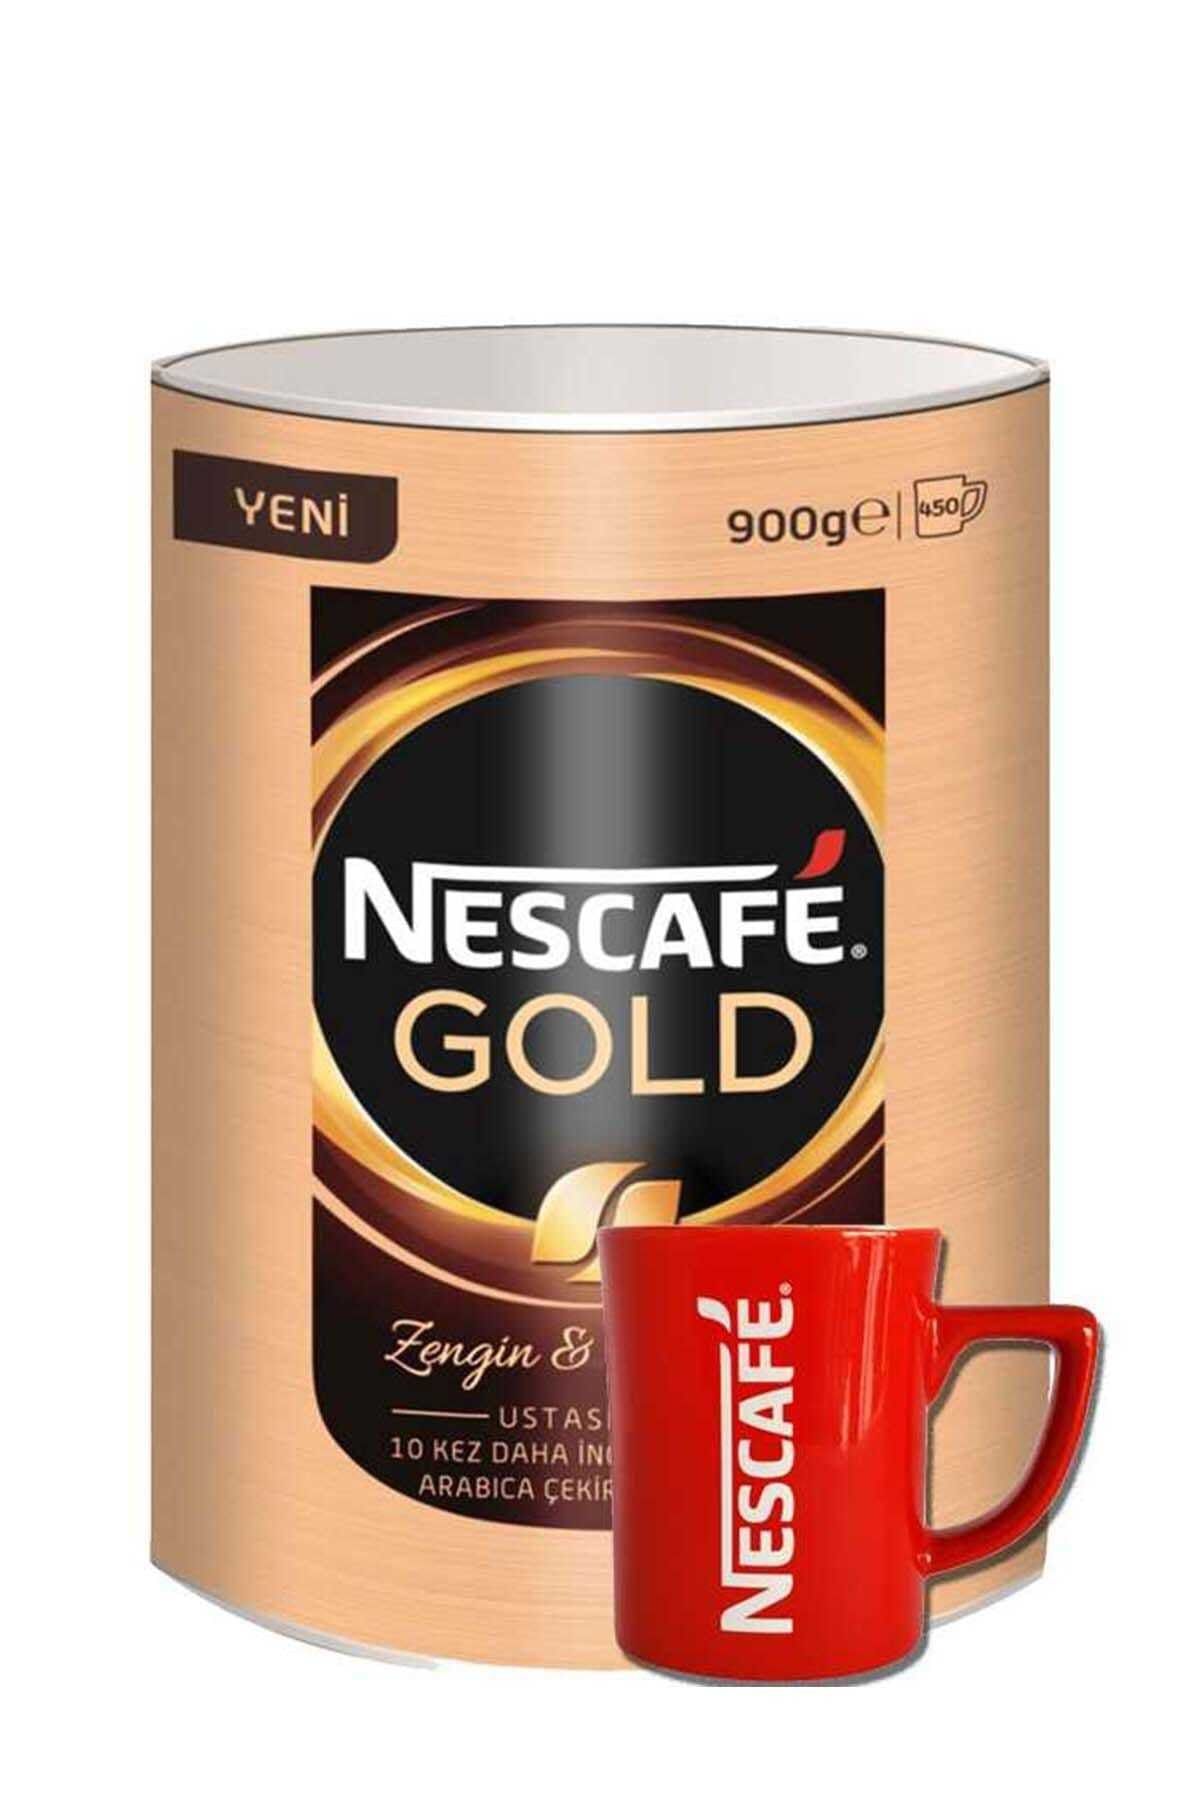 Nestle Gold Kahve Teneke Kutu 900 Gr + Kırmızı Kupa Hediyeli